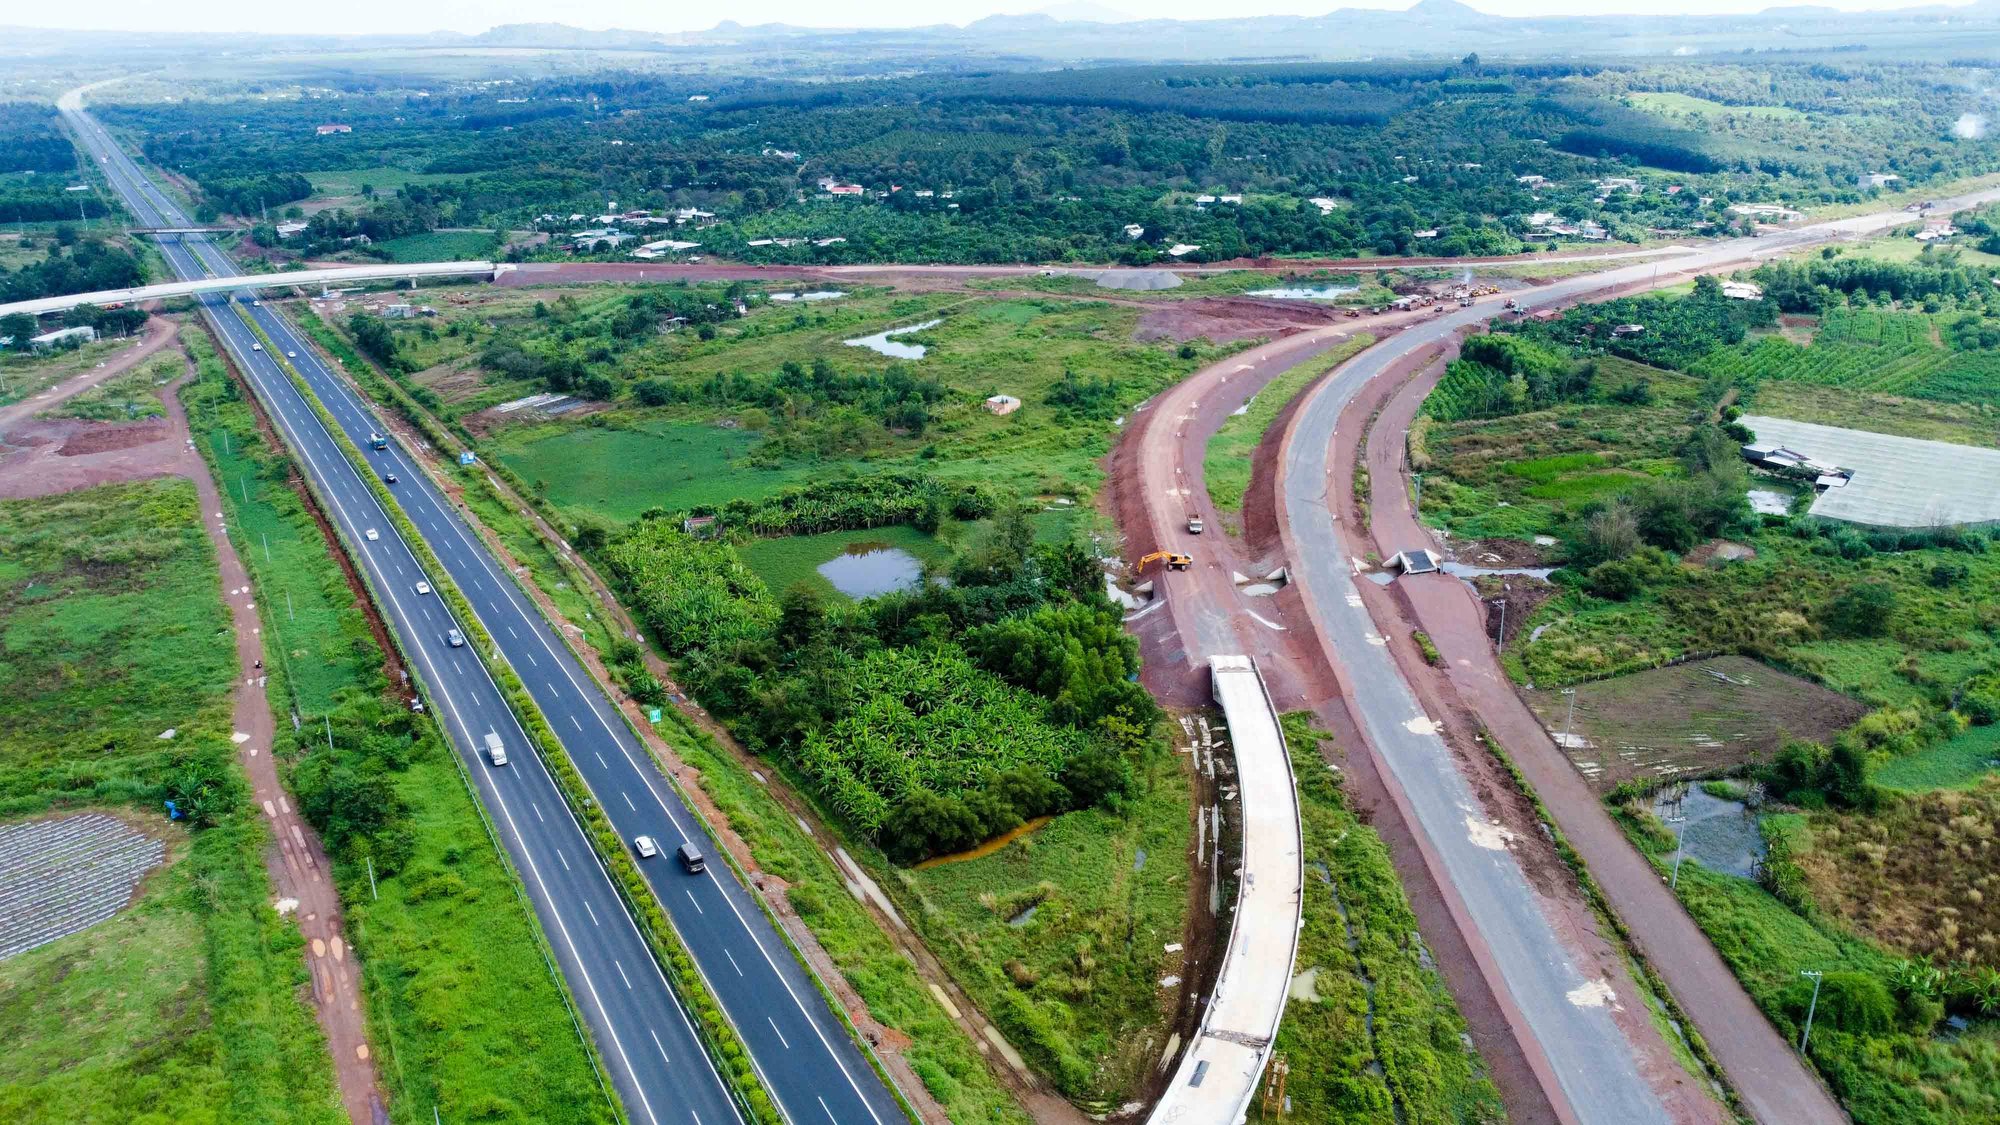 Cao tốc Biên Hòa - Vũng Tàu sắp hoàn thành lựa chọn nhà thầu - Ảnh 1.